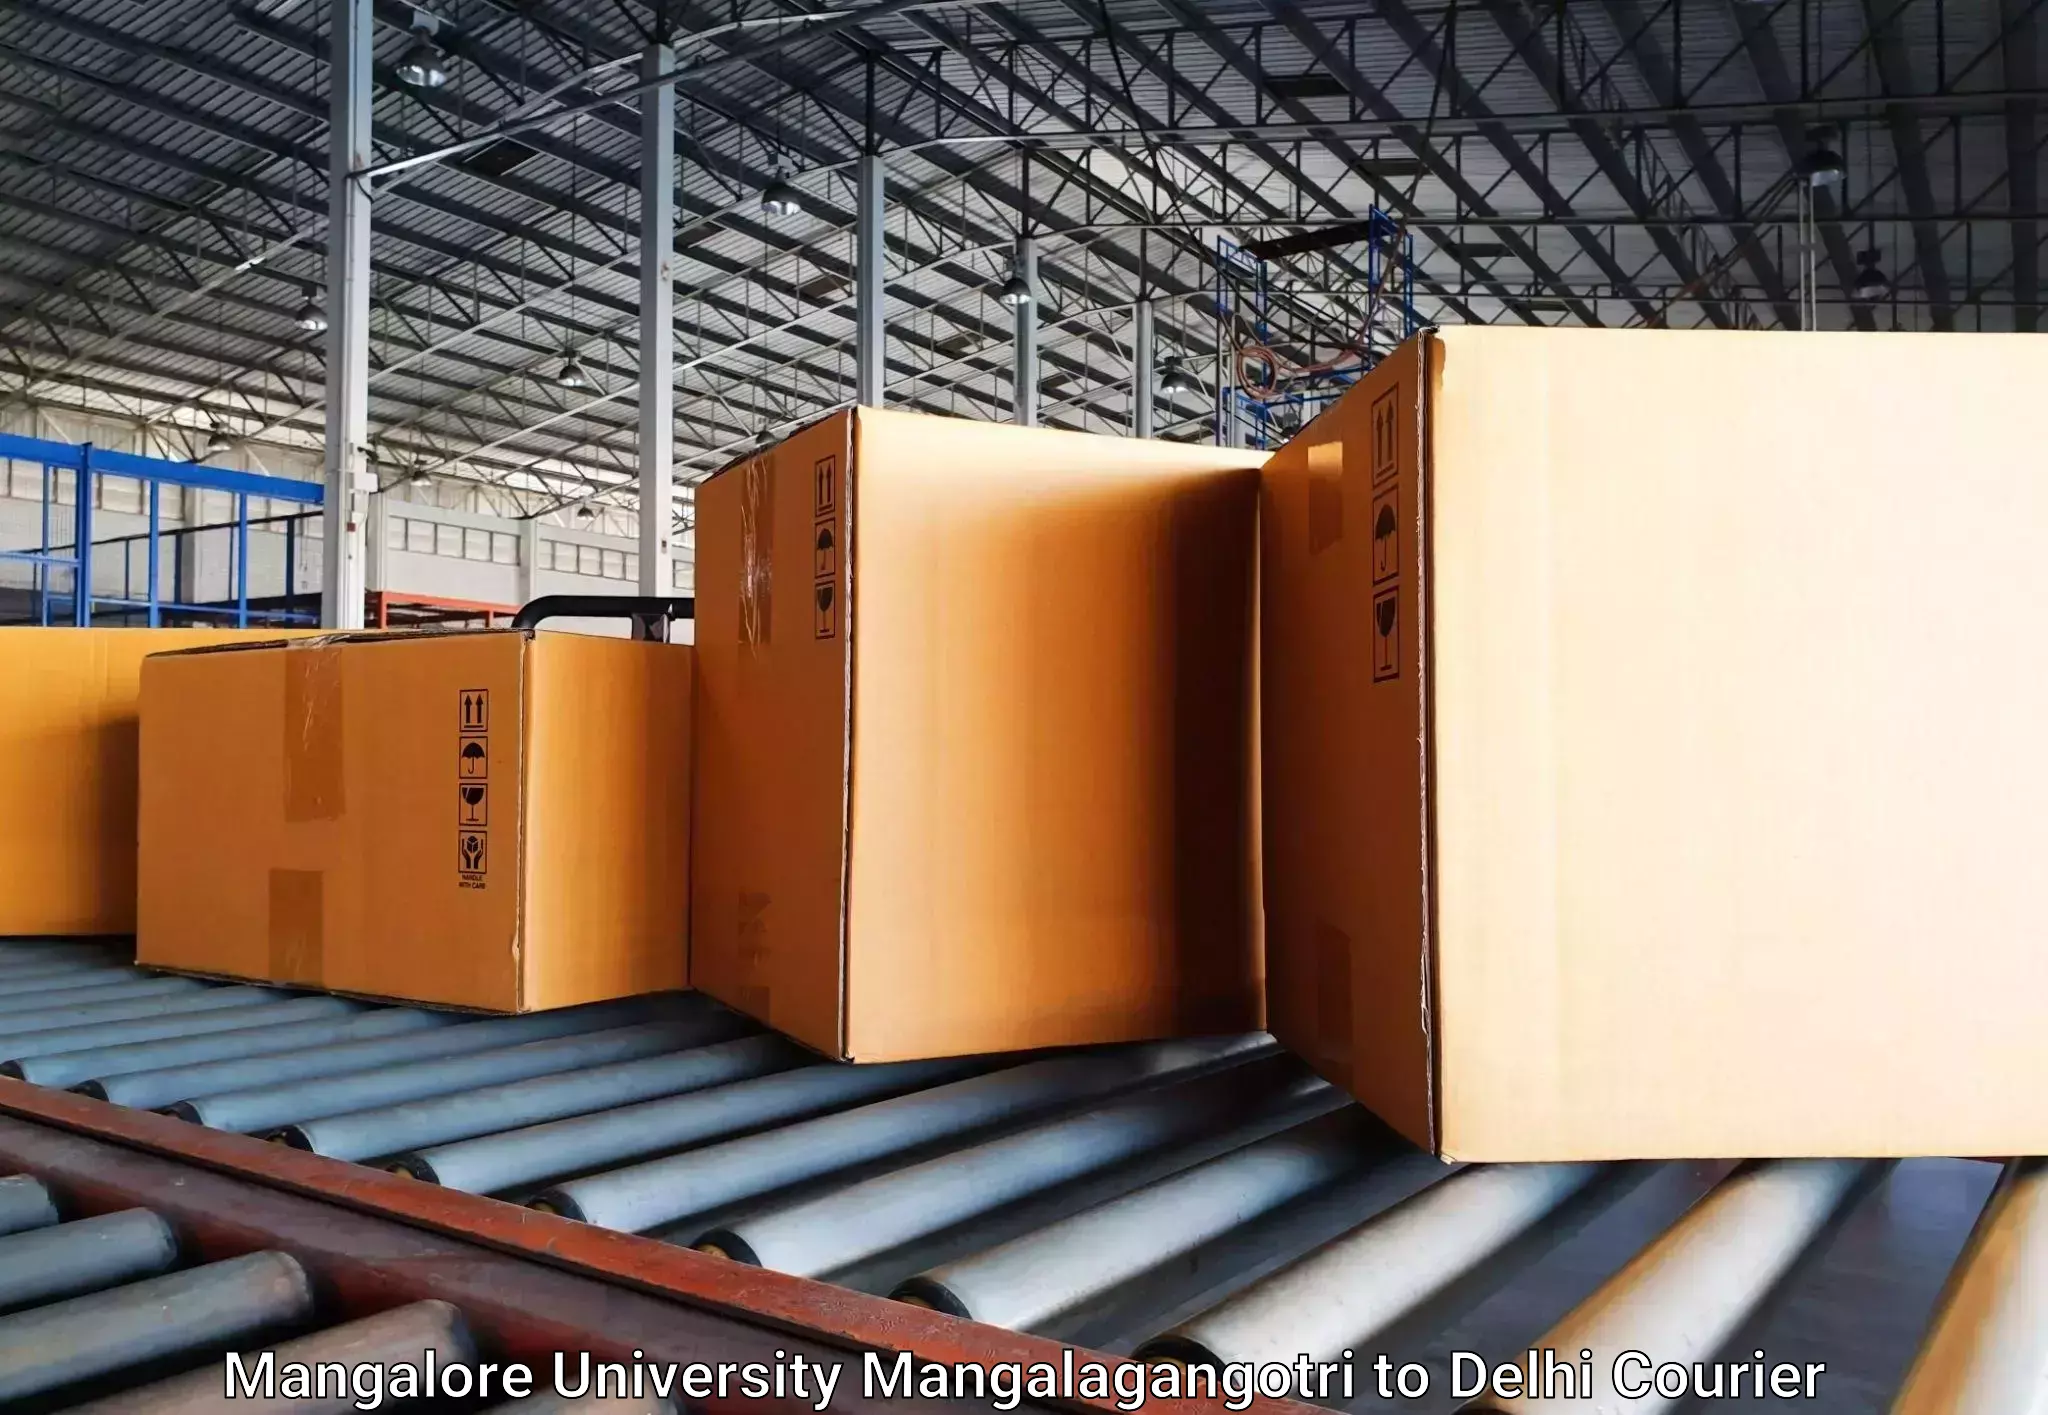 Luggage delivery network Mangalore University Mangalagangotri to University of Delhi